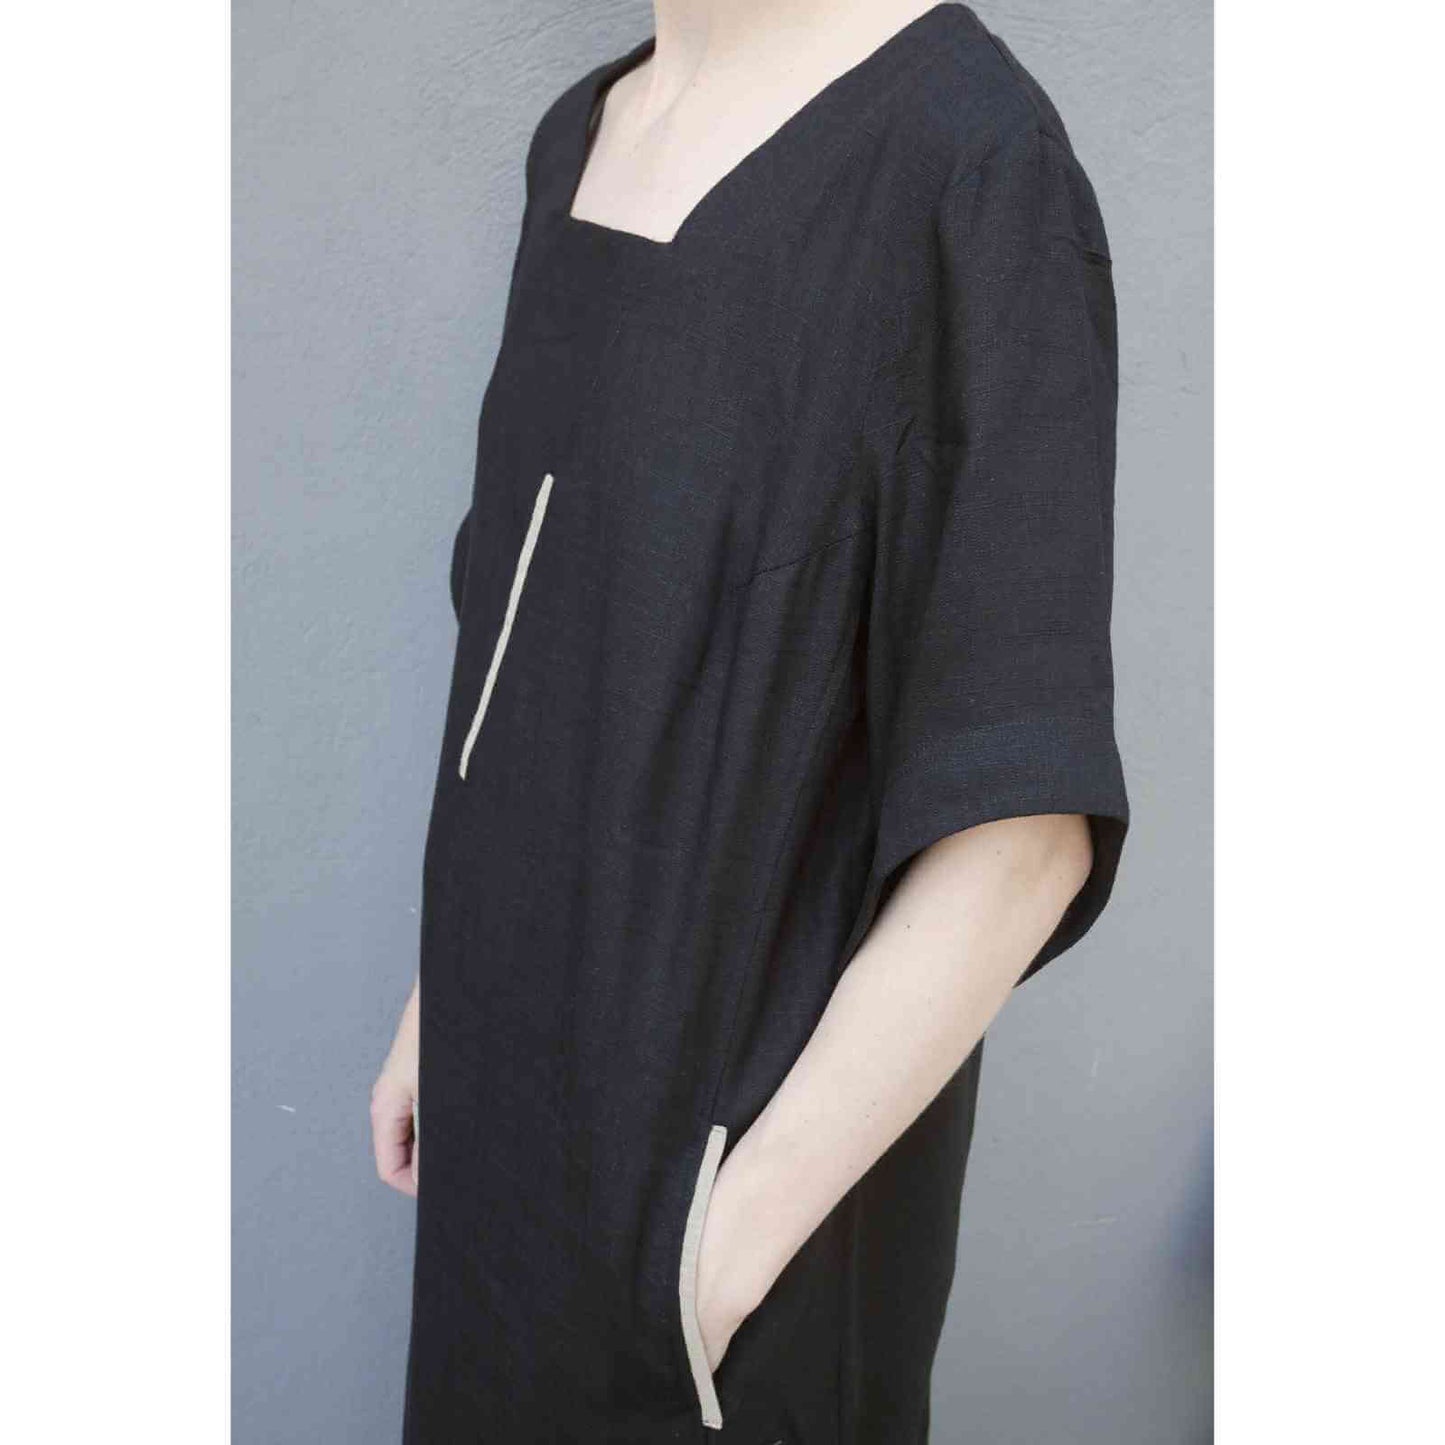 Sort halvlang kjole fra E-Avantgarde fra siden med sidelomme